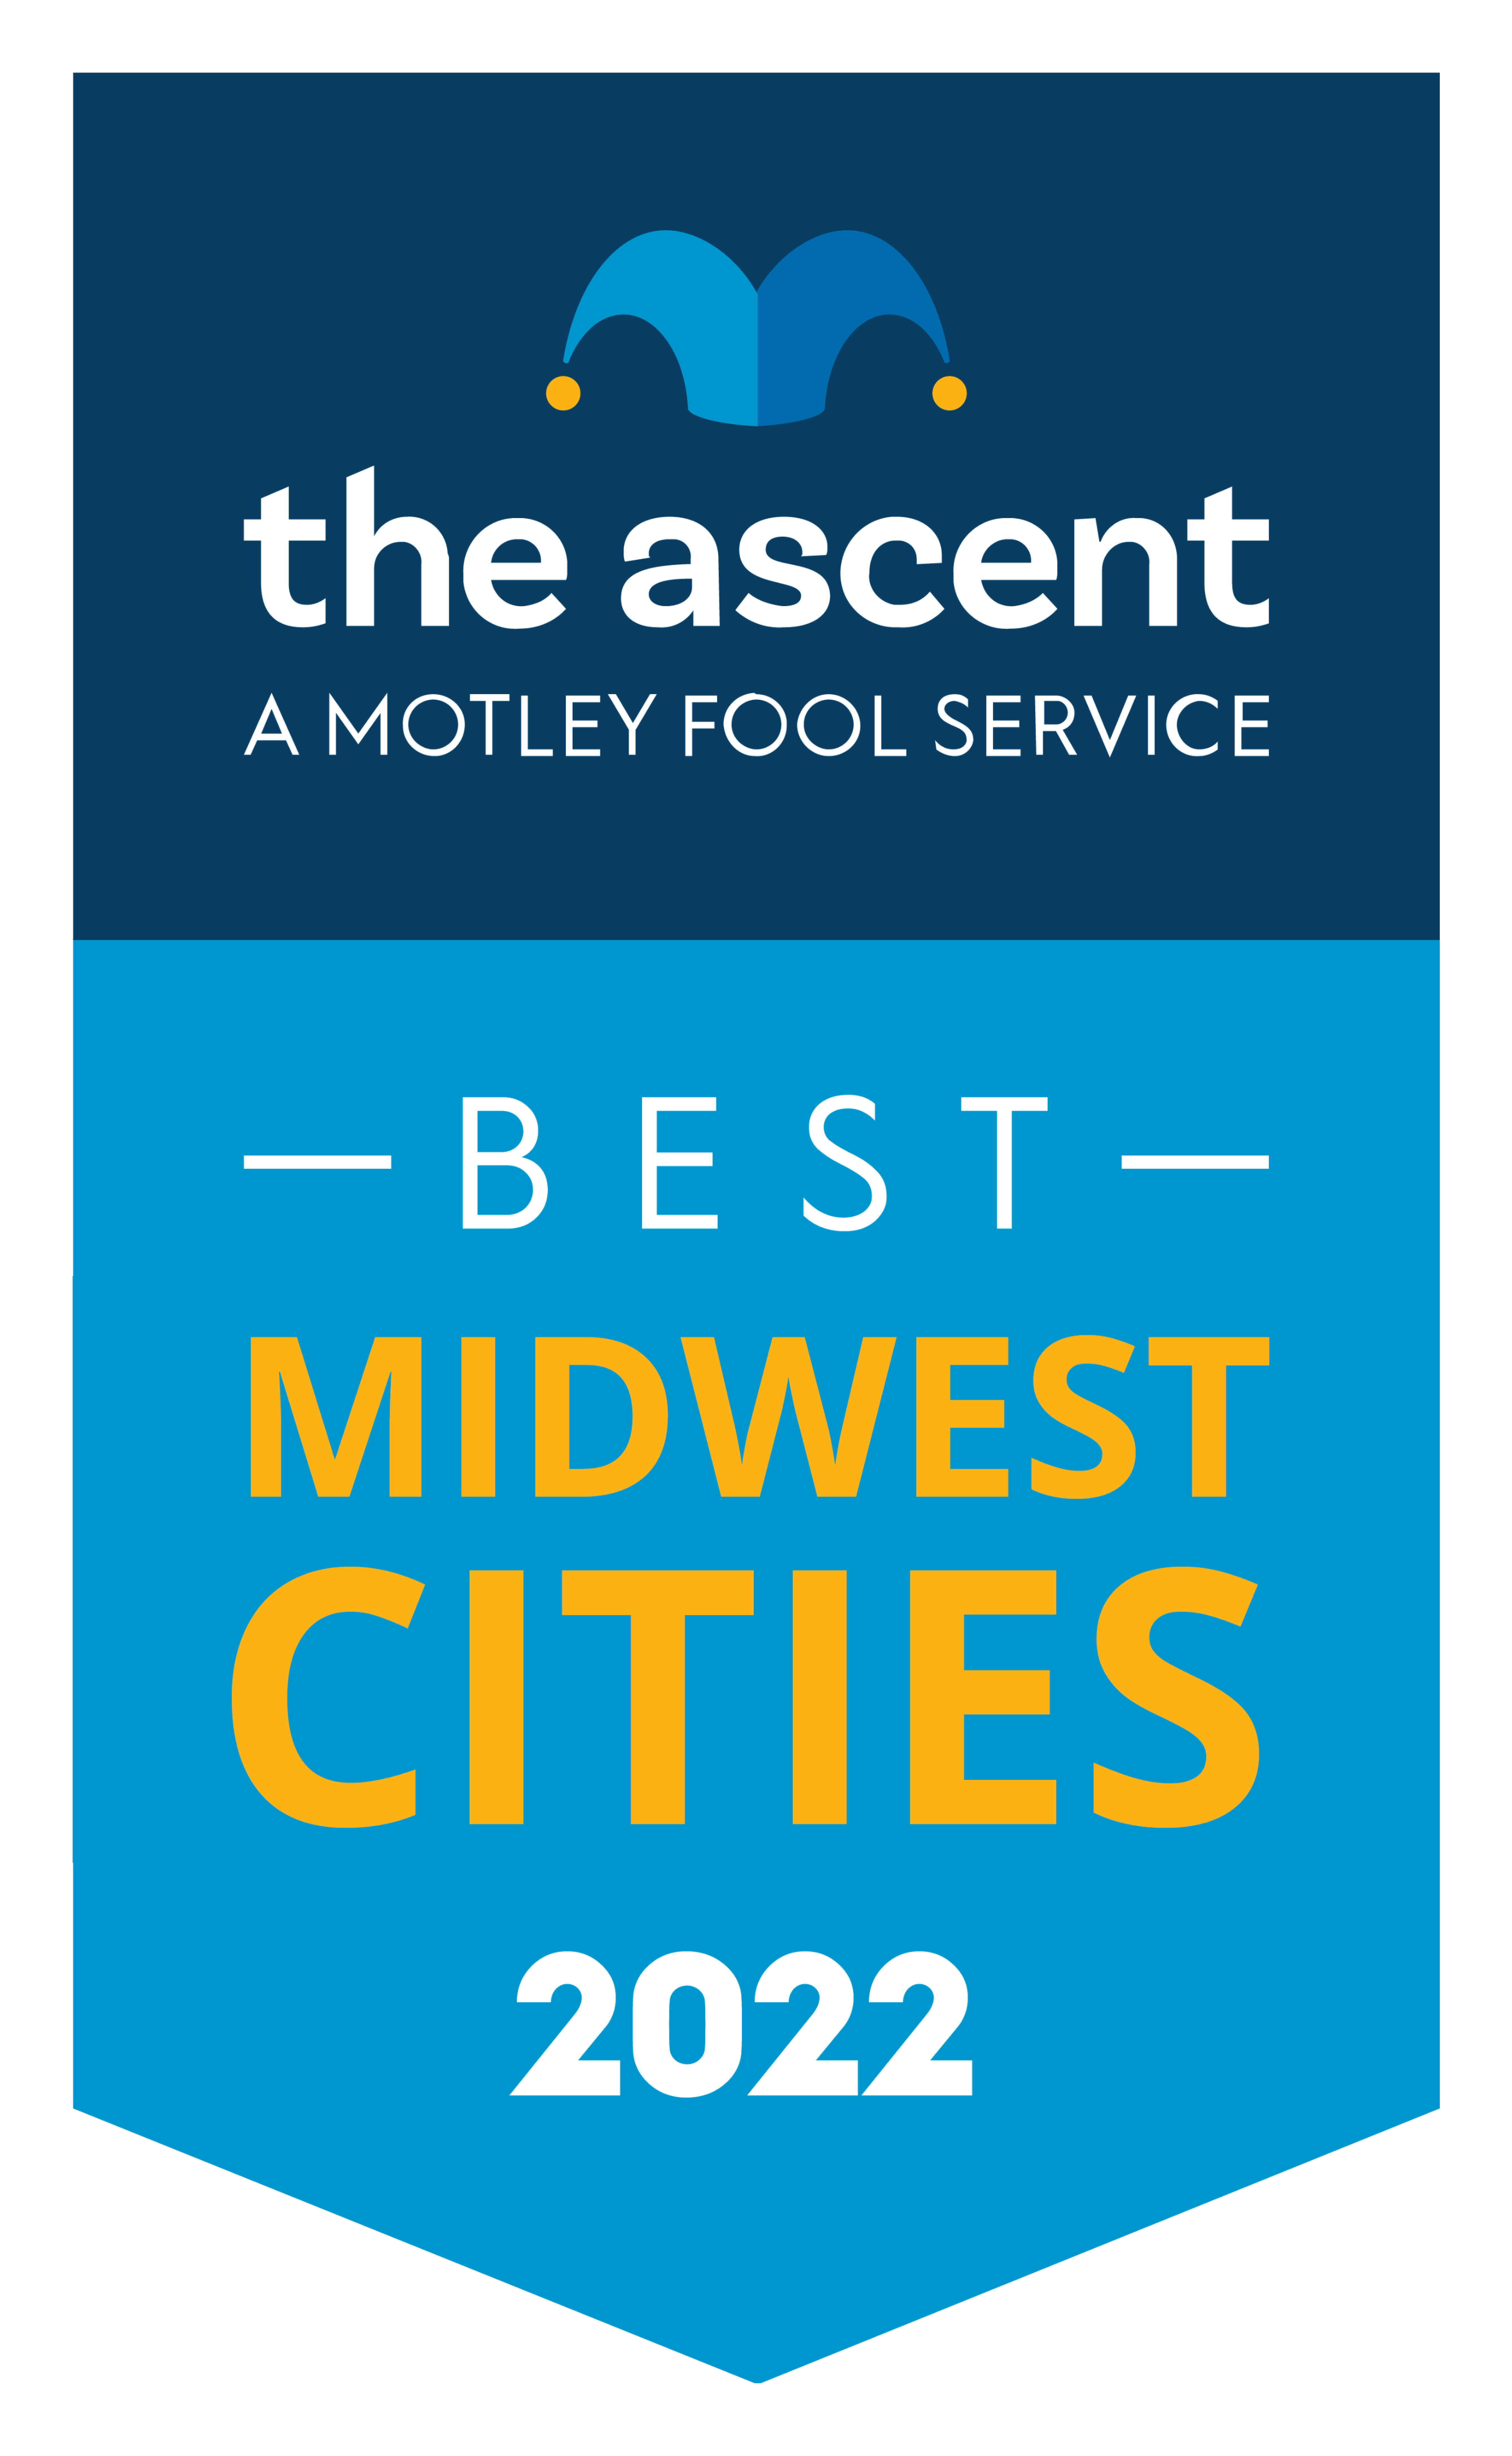 Best Midwest Cities for Millennials award banner